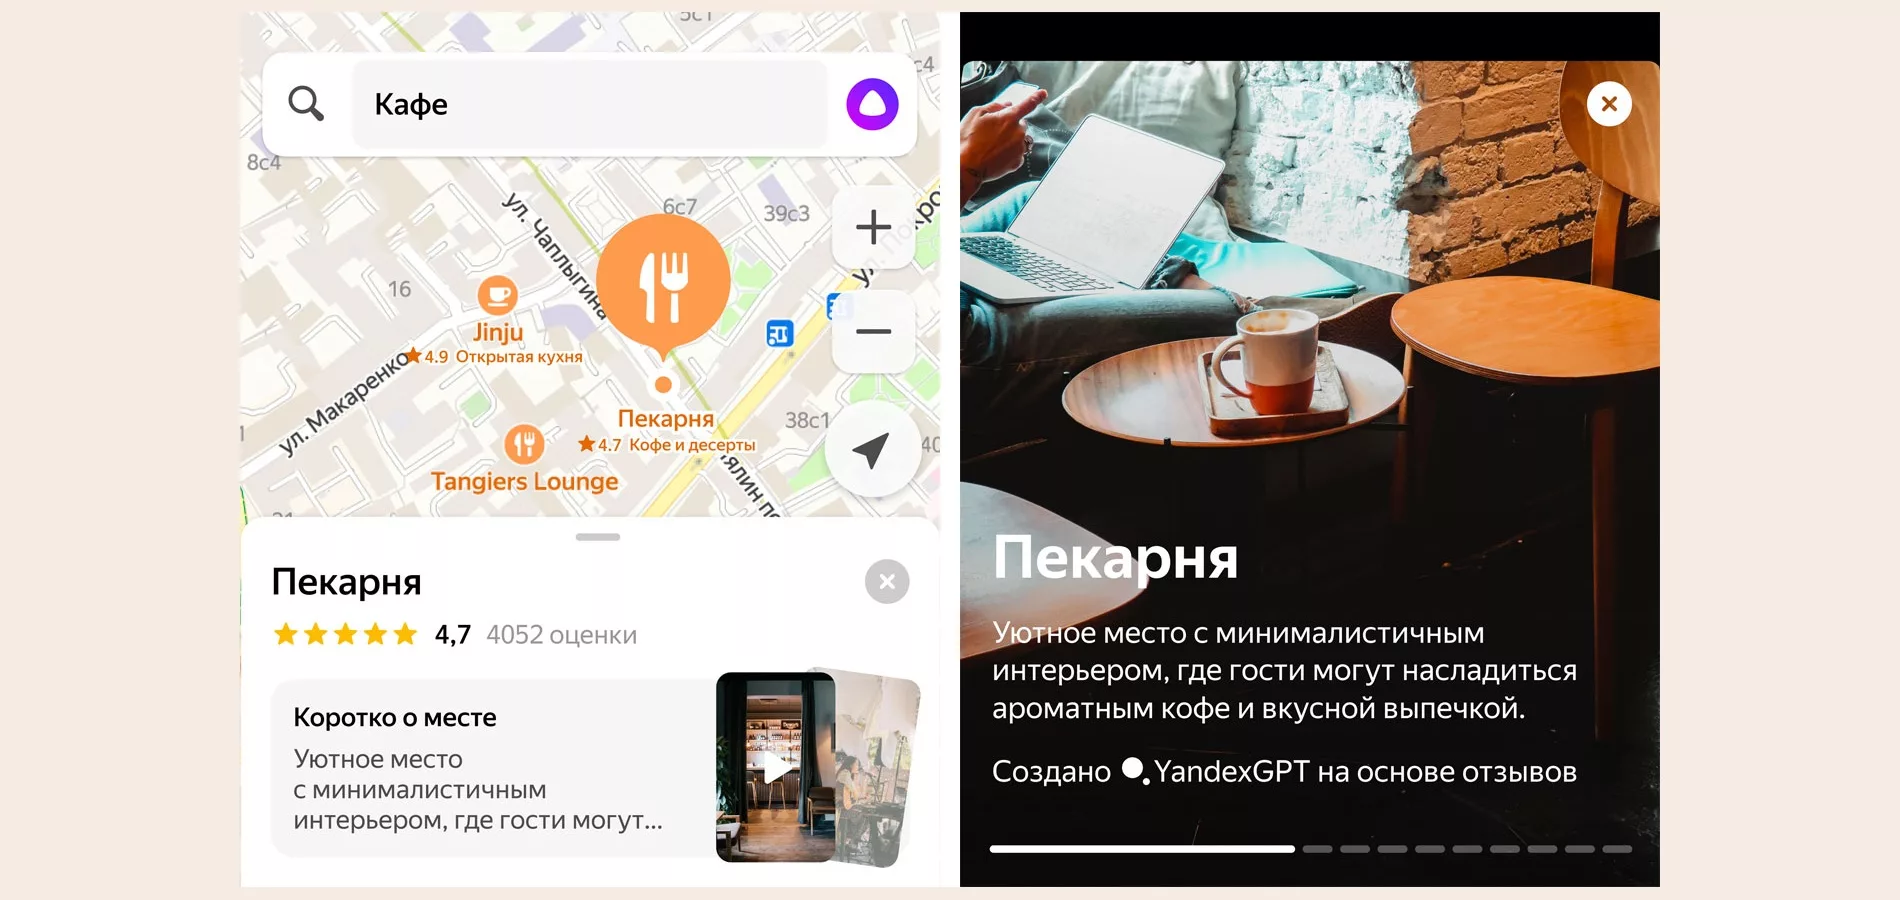 Карты от Яндекса стали показывать больше подробностей о местах в городе